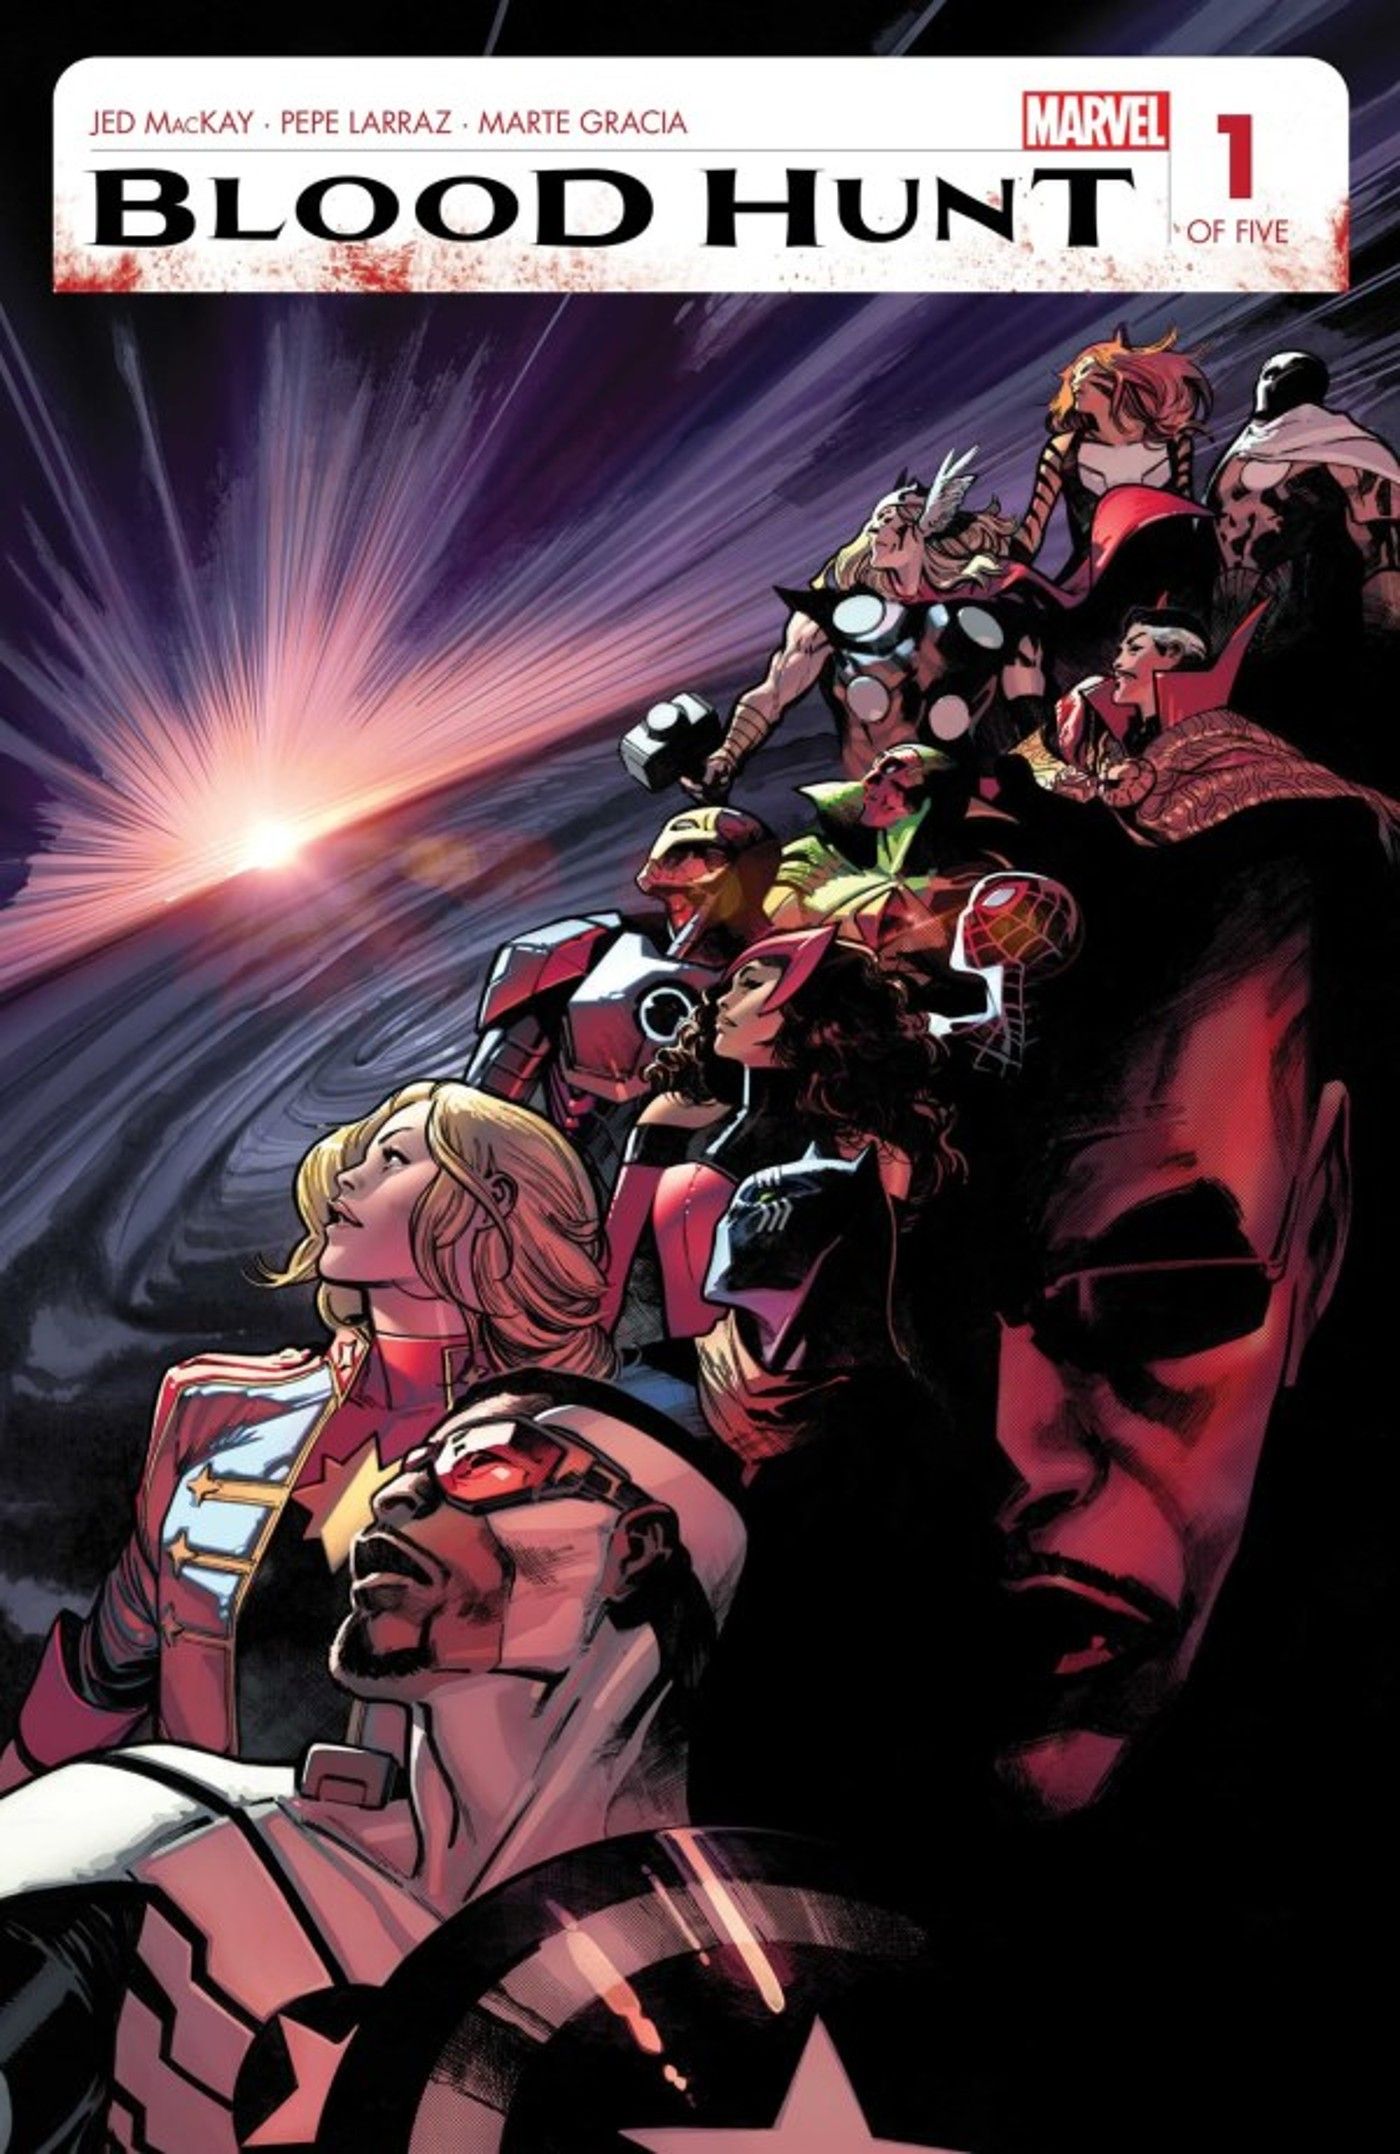 Capa de Blood Hunt #1, Avengers & Blade olham para o céu vermelho-sangue